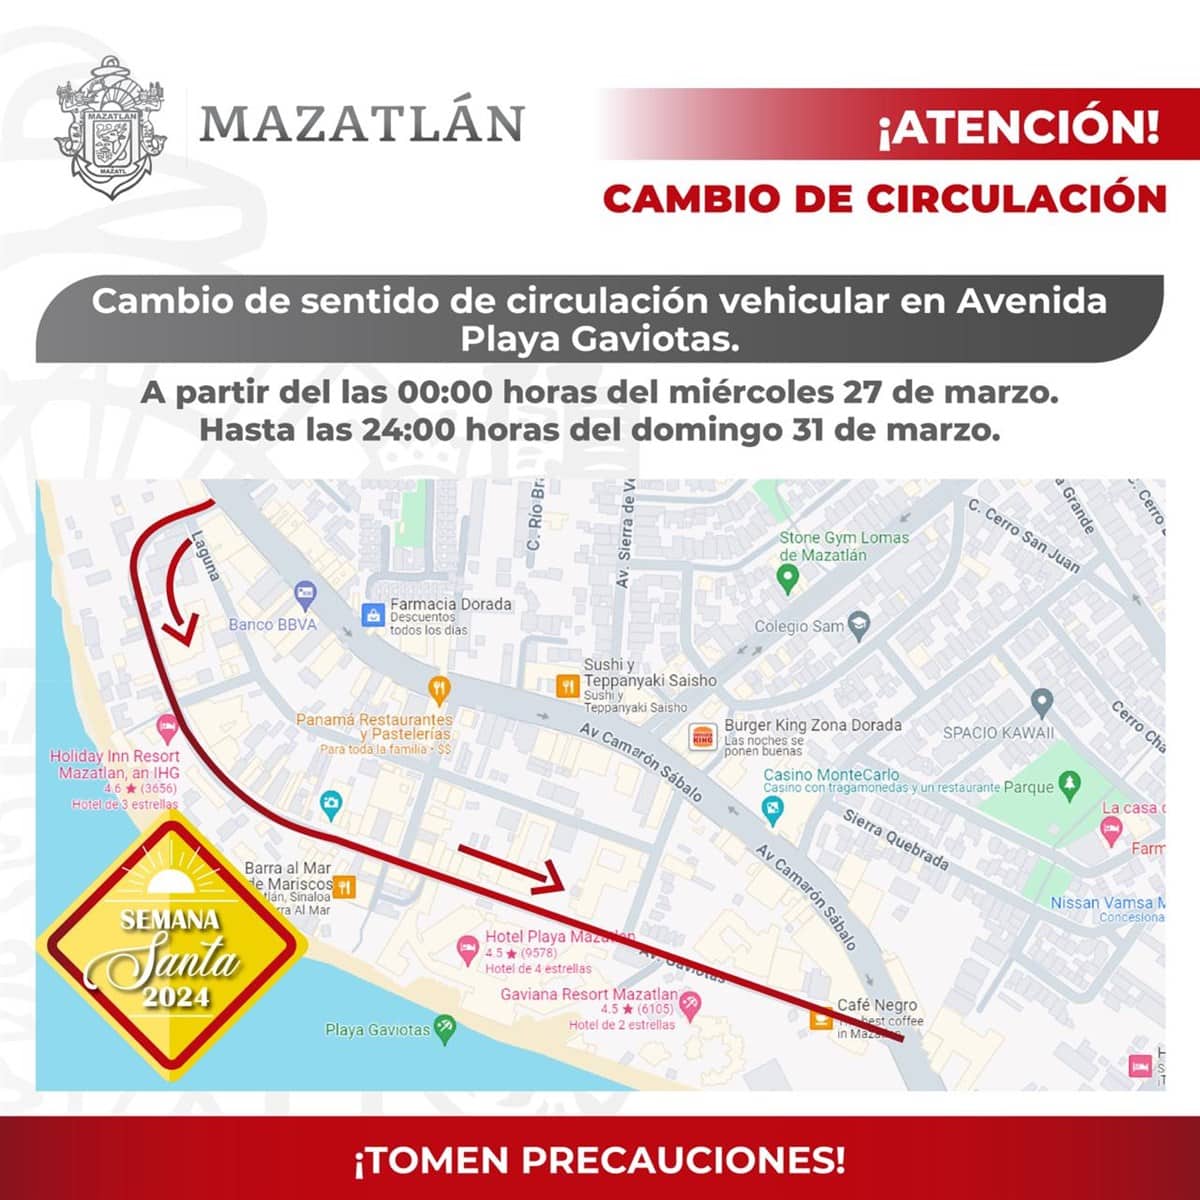 Vialidades cerradas mazatlán